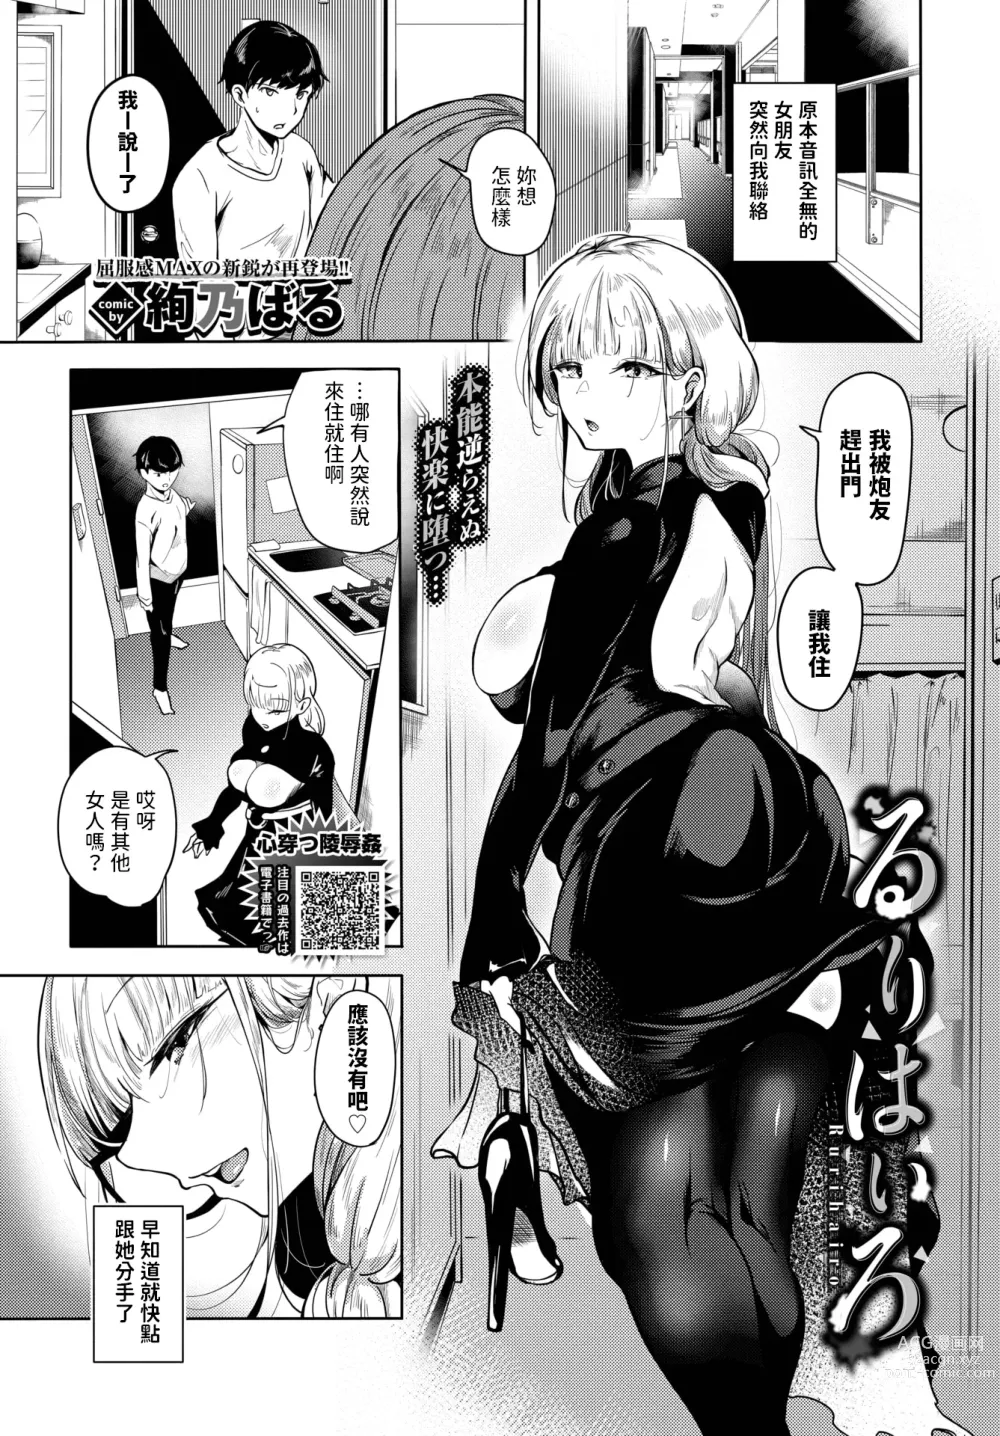 Page 1 of manga Rurihairo